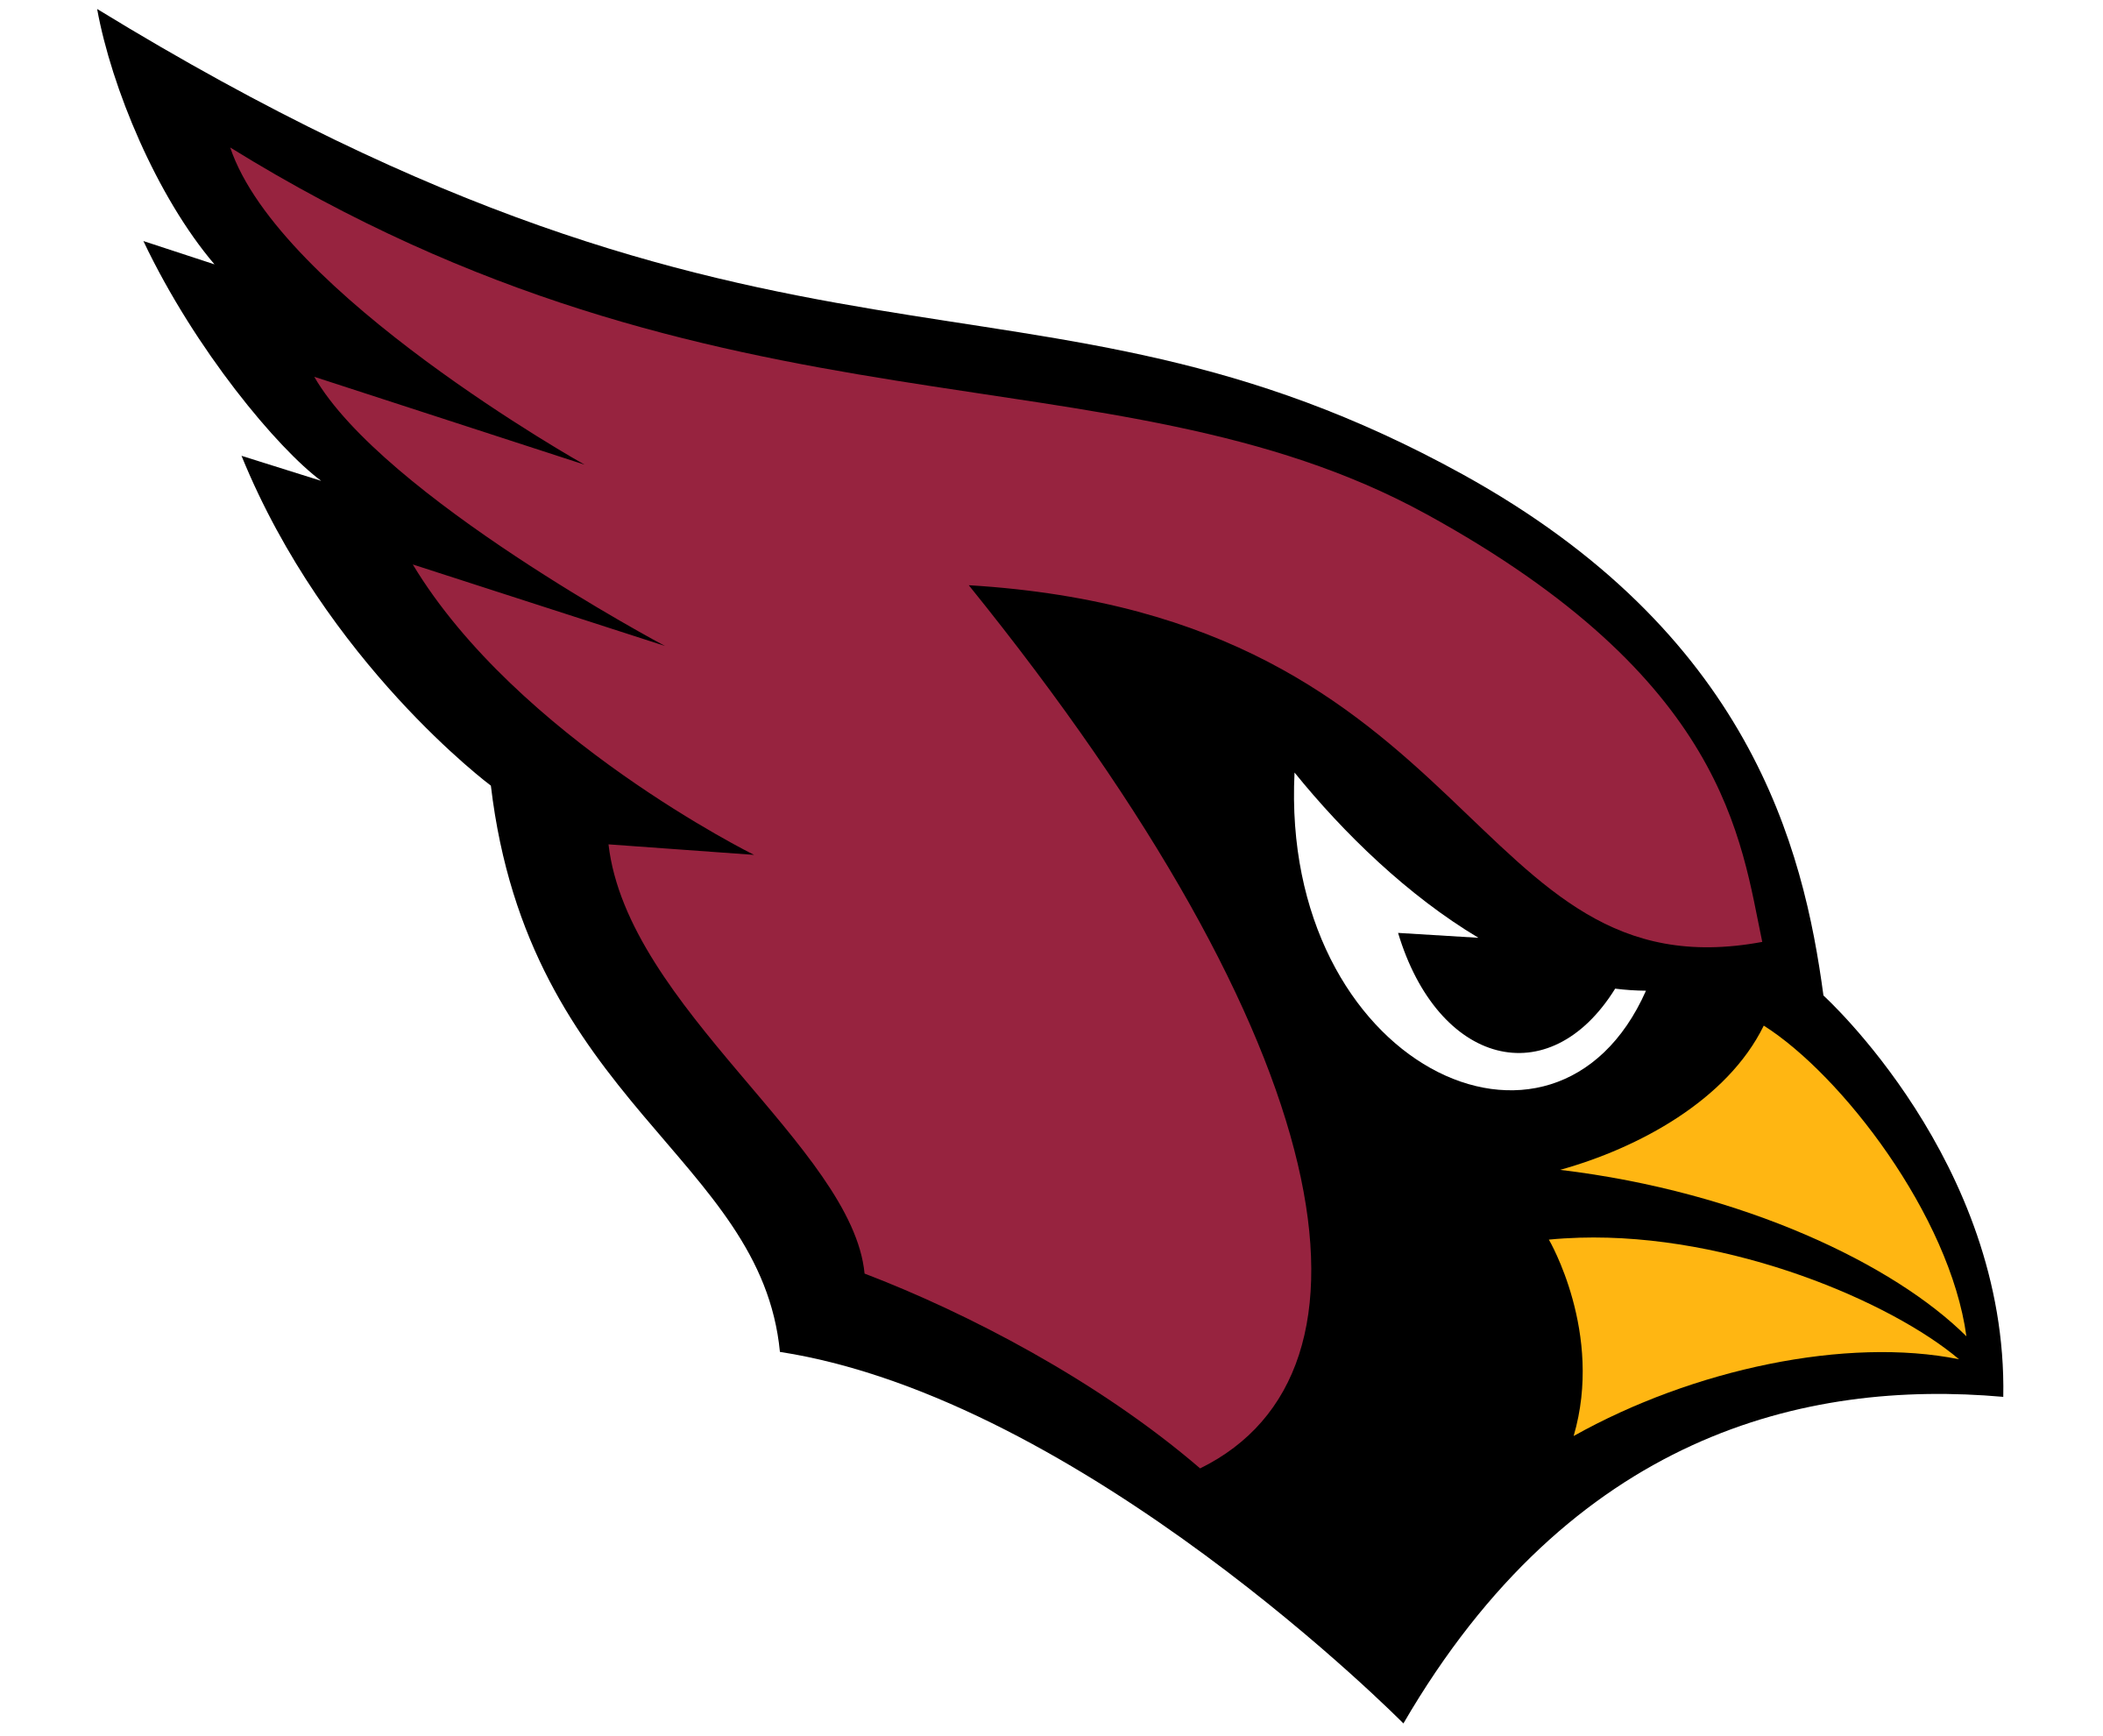 Arizona Cardinals Logo Vector